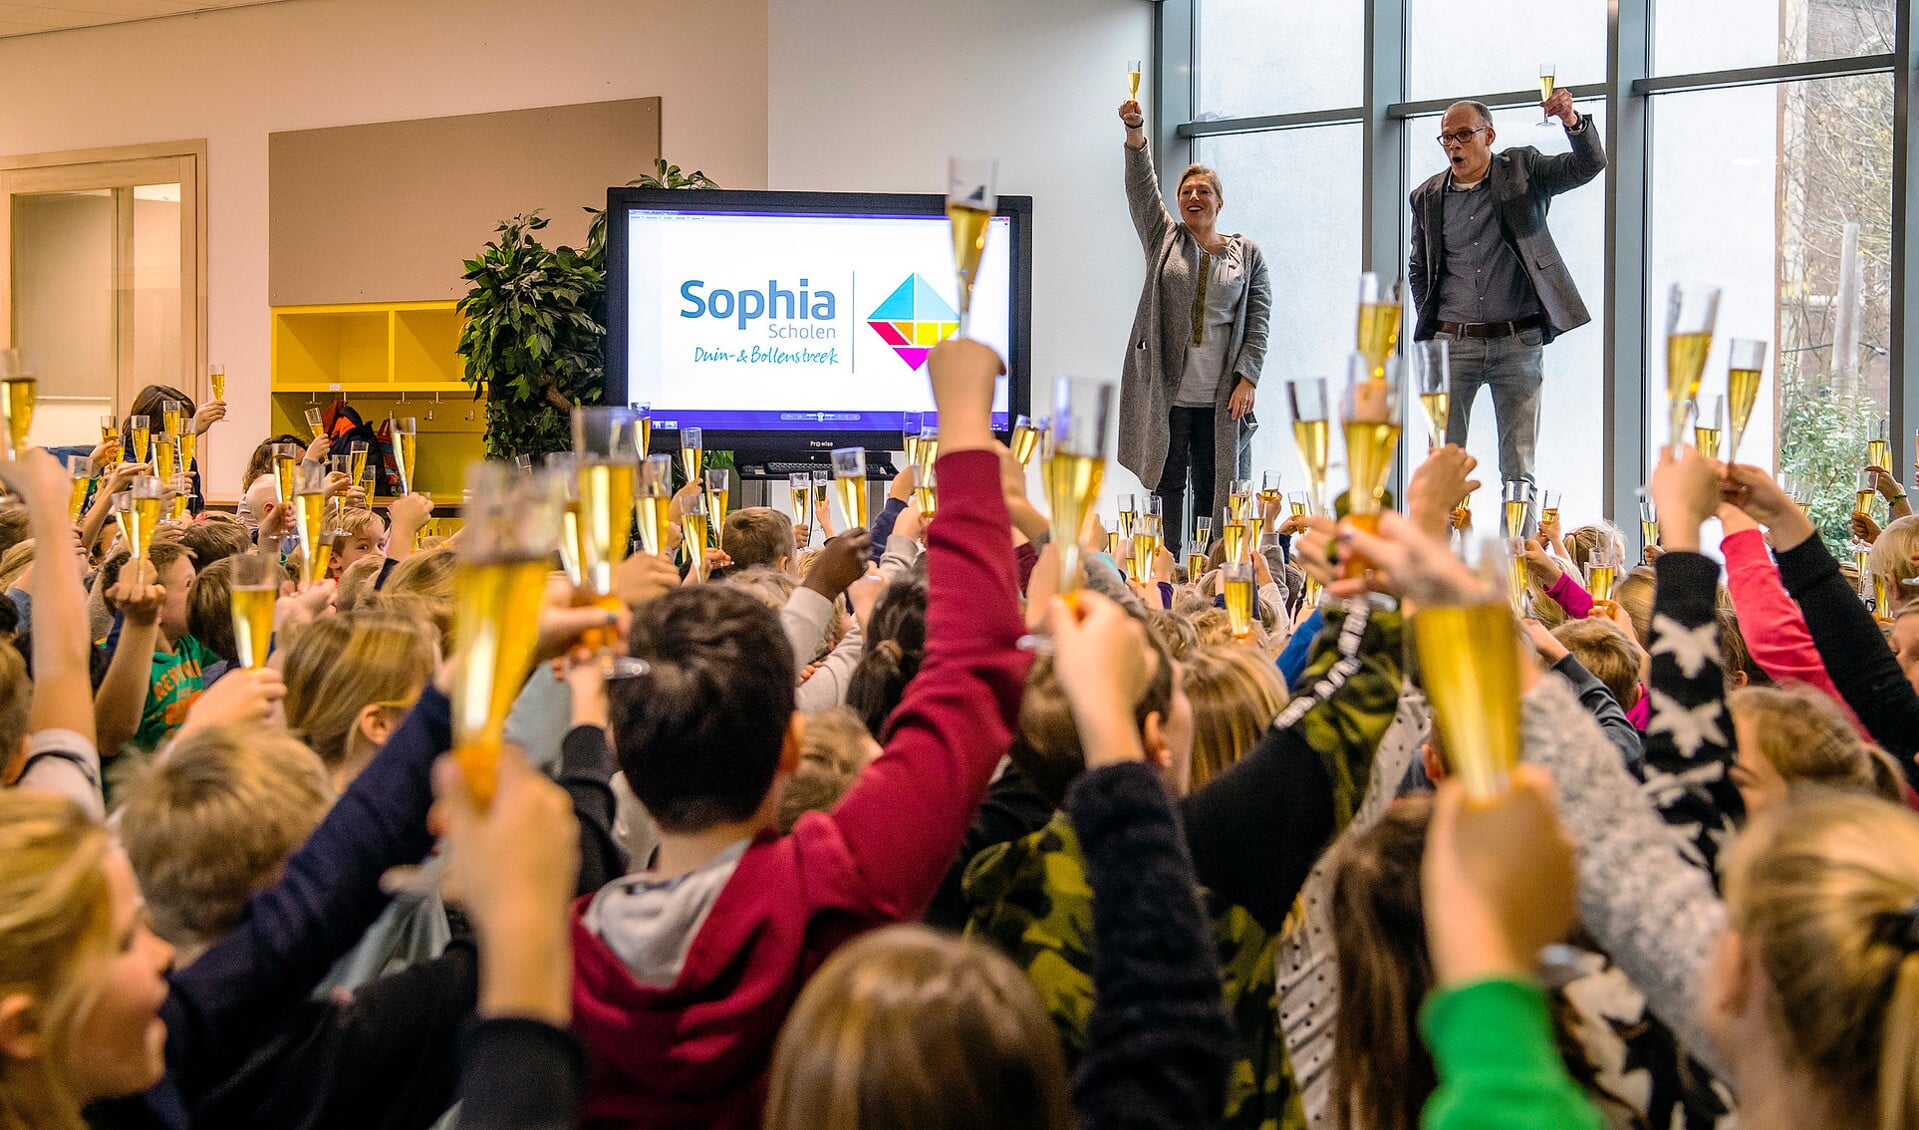  Kinderen van basisschool de Buitenplaats in Warmond proosten op de nieuwe naam en het nieuwe logo van de Sophia Scholen.| Foto: pr./ Frank van Beek